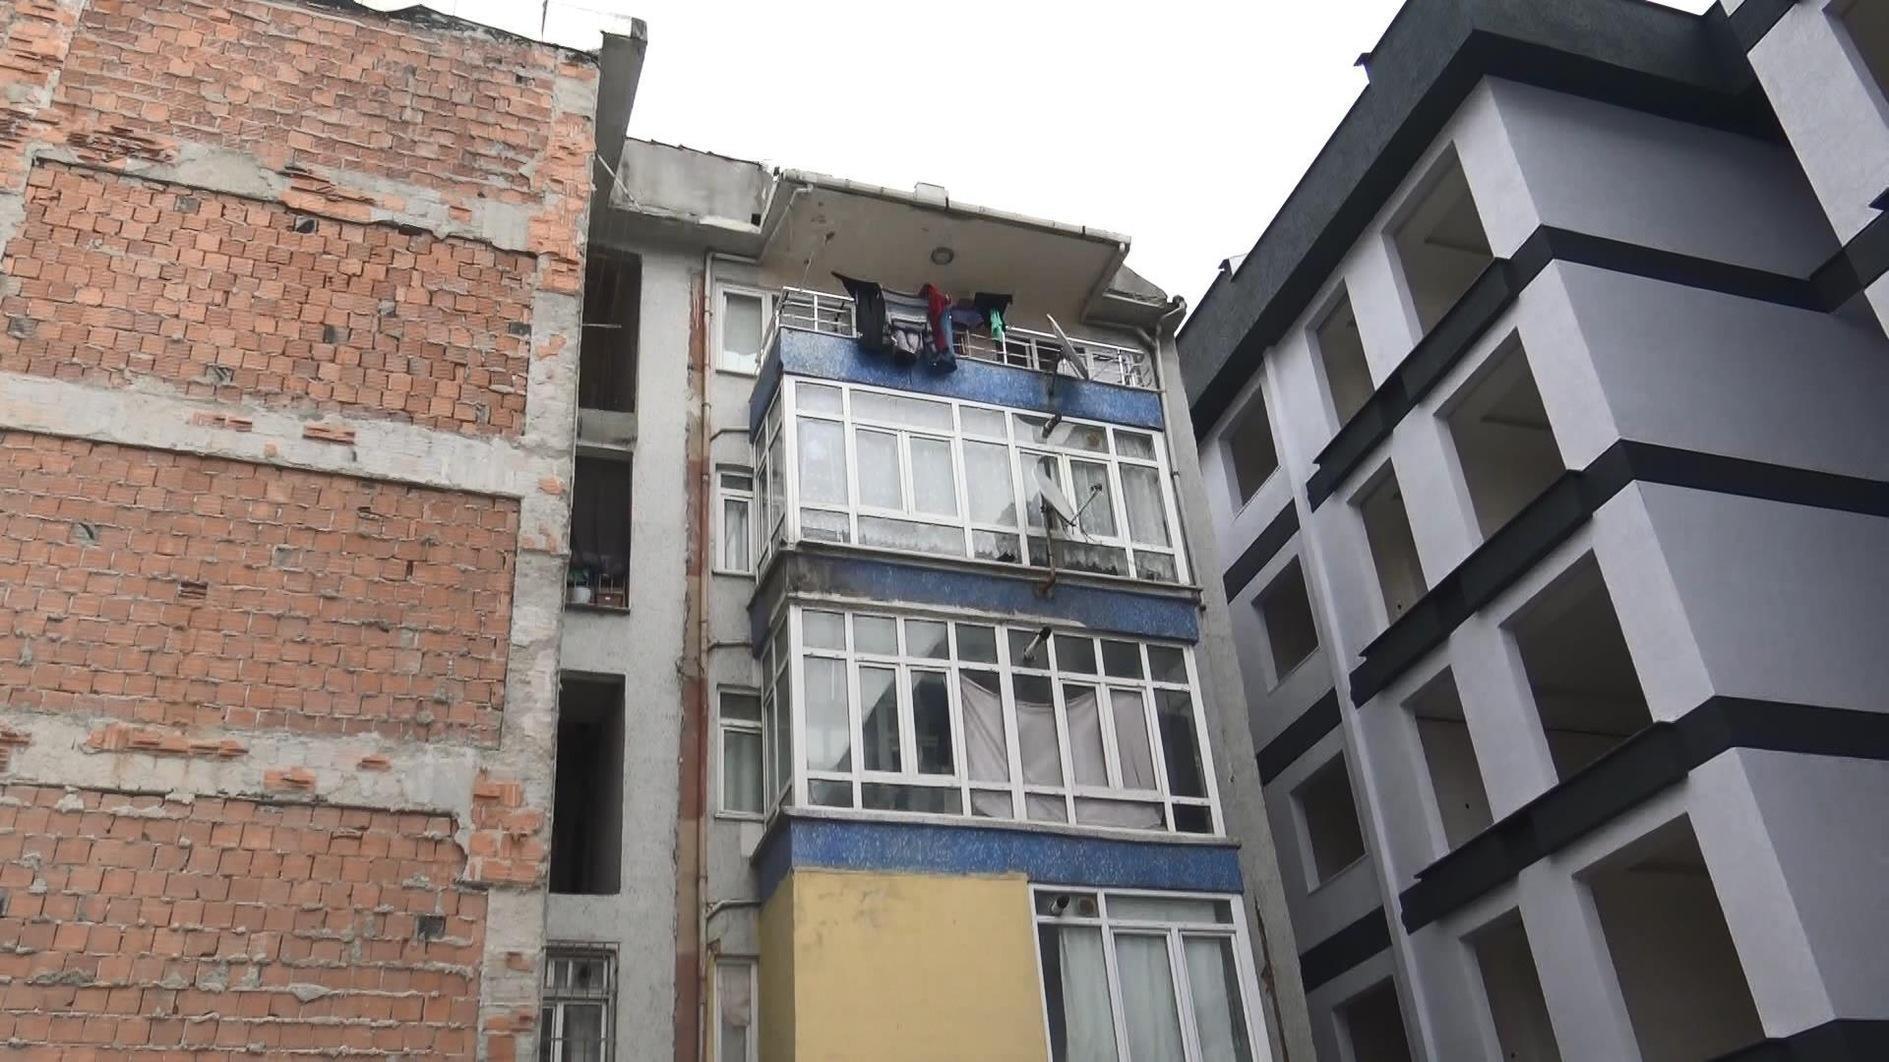 Appartement in Istanbul illegaal onderverhuurd voor daghuur met 27 bedden